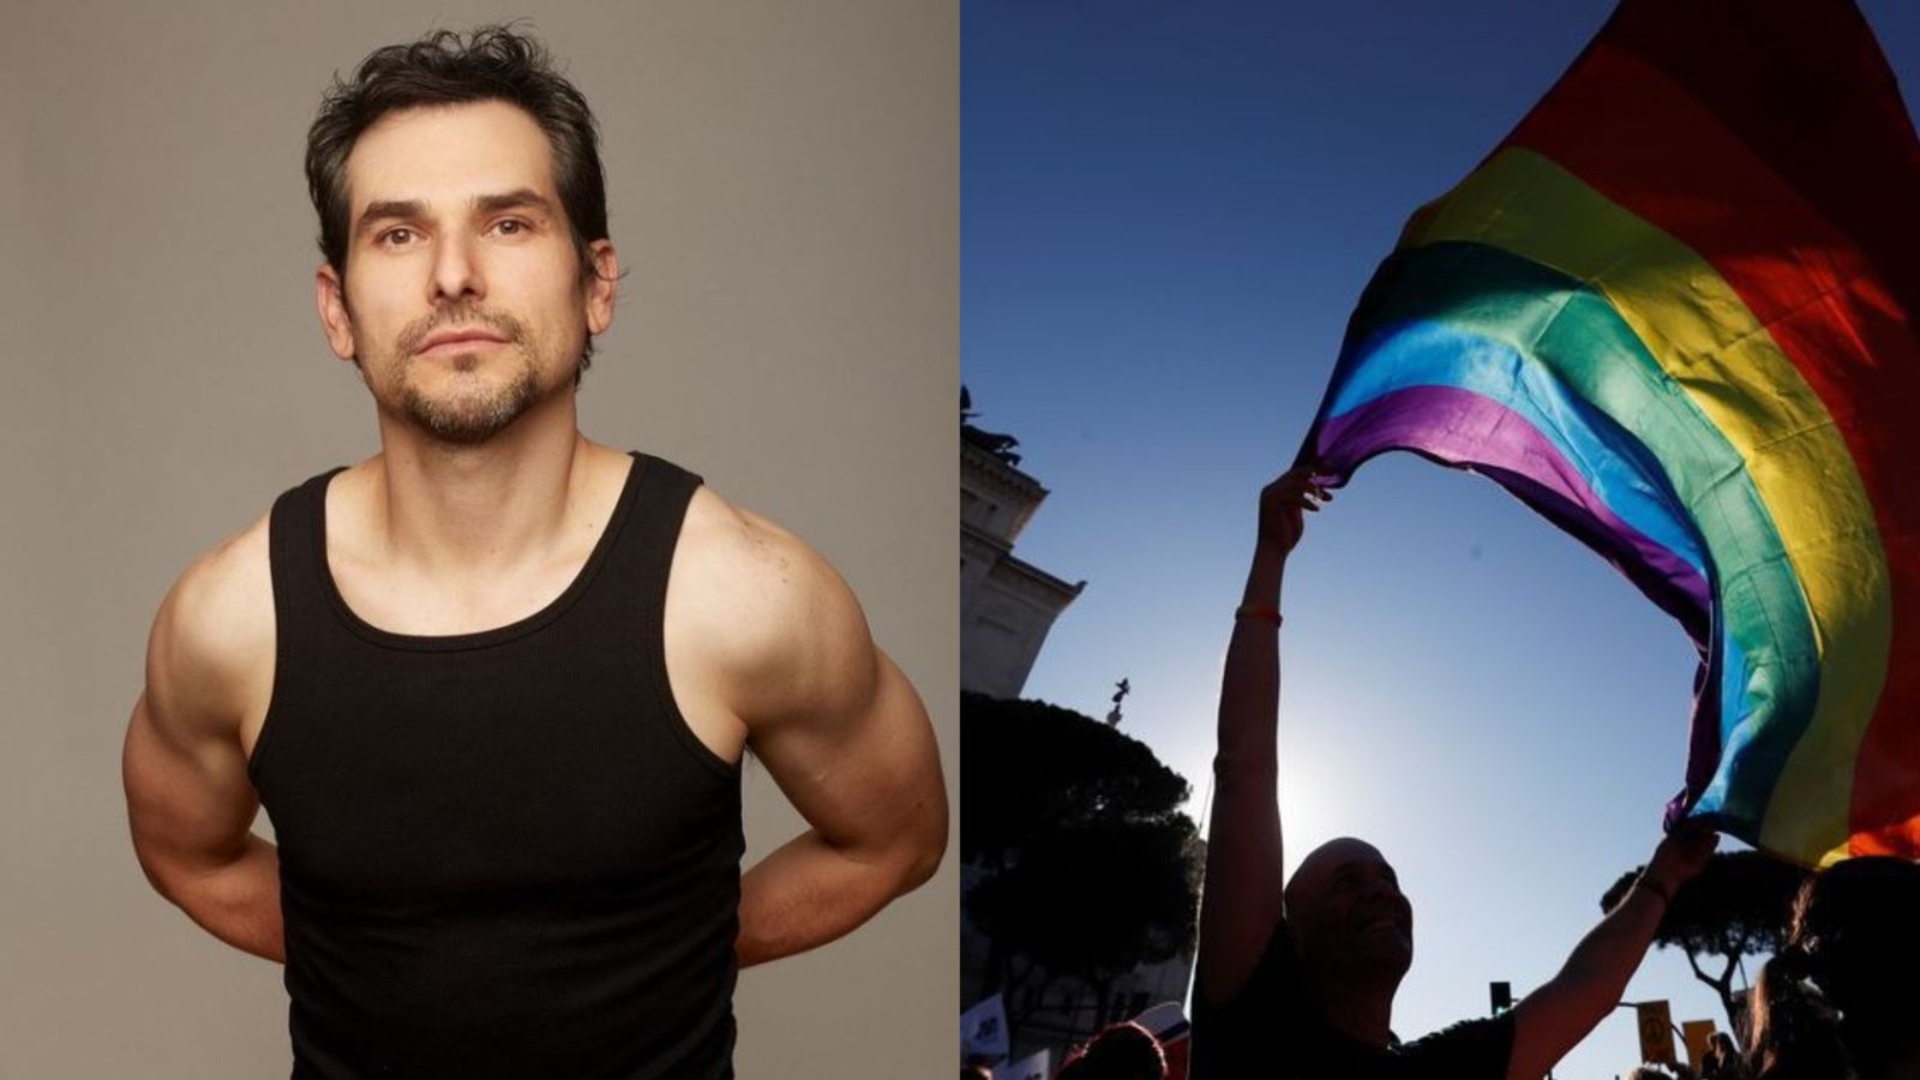 Alan Estrada y su poderoso mensaje sobre el Orgullo LGBT+: “La ignorancia y prejuicio pavimenta violencia” 
(Fotos: Instagram/@alanestrada/ REUTERS/Yara Nardi)